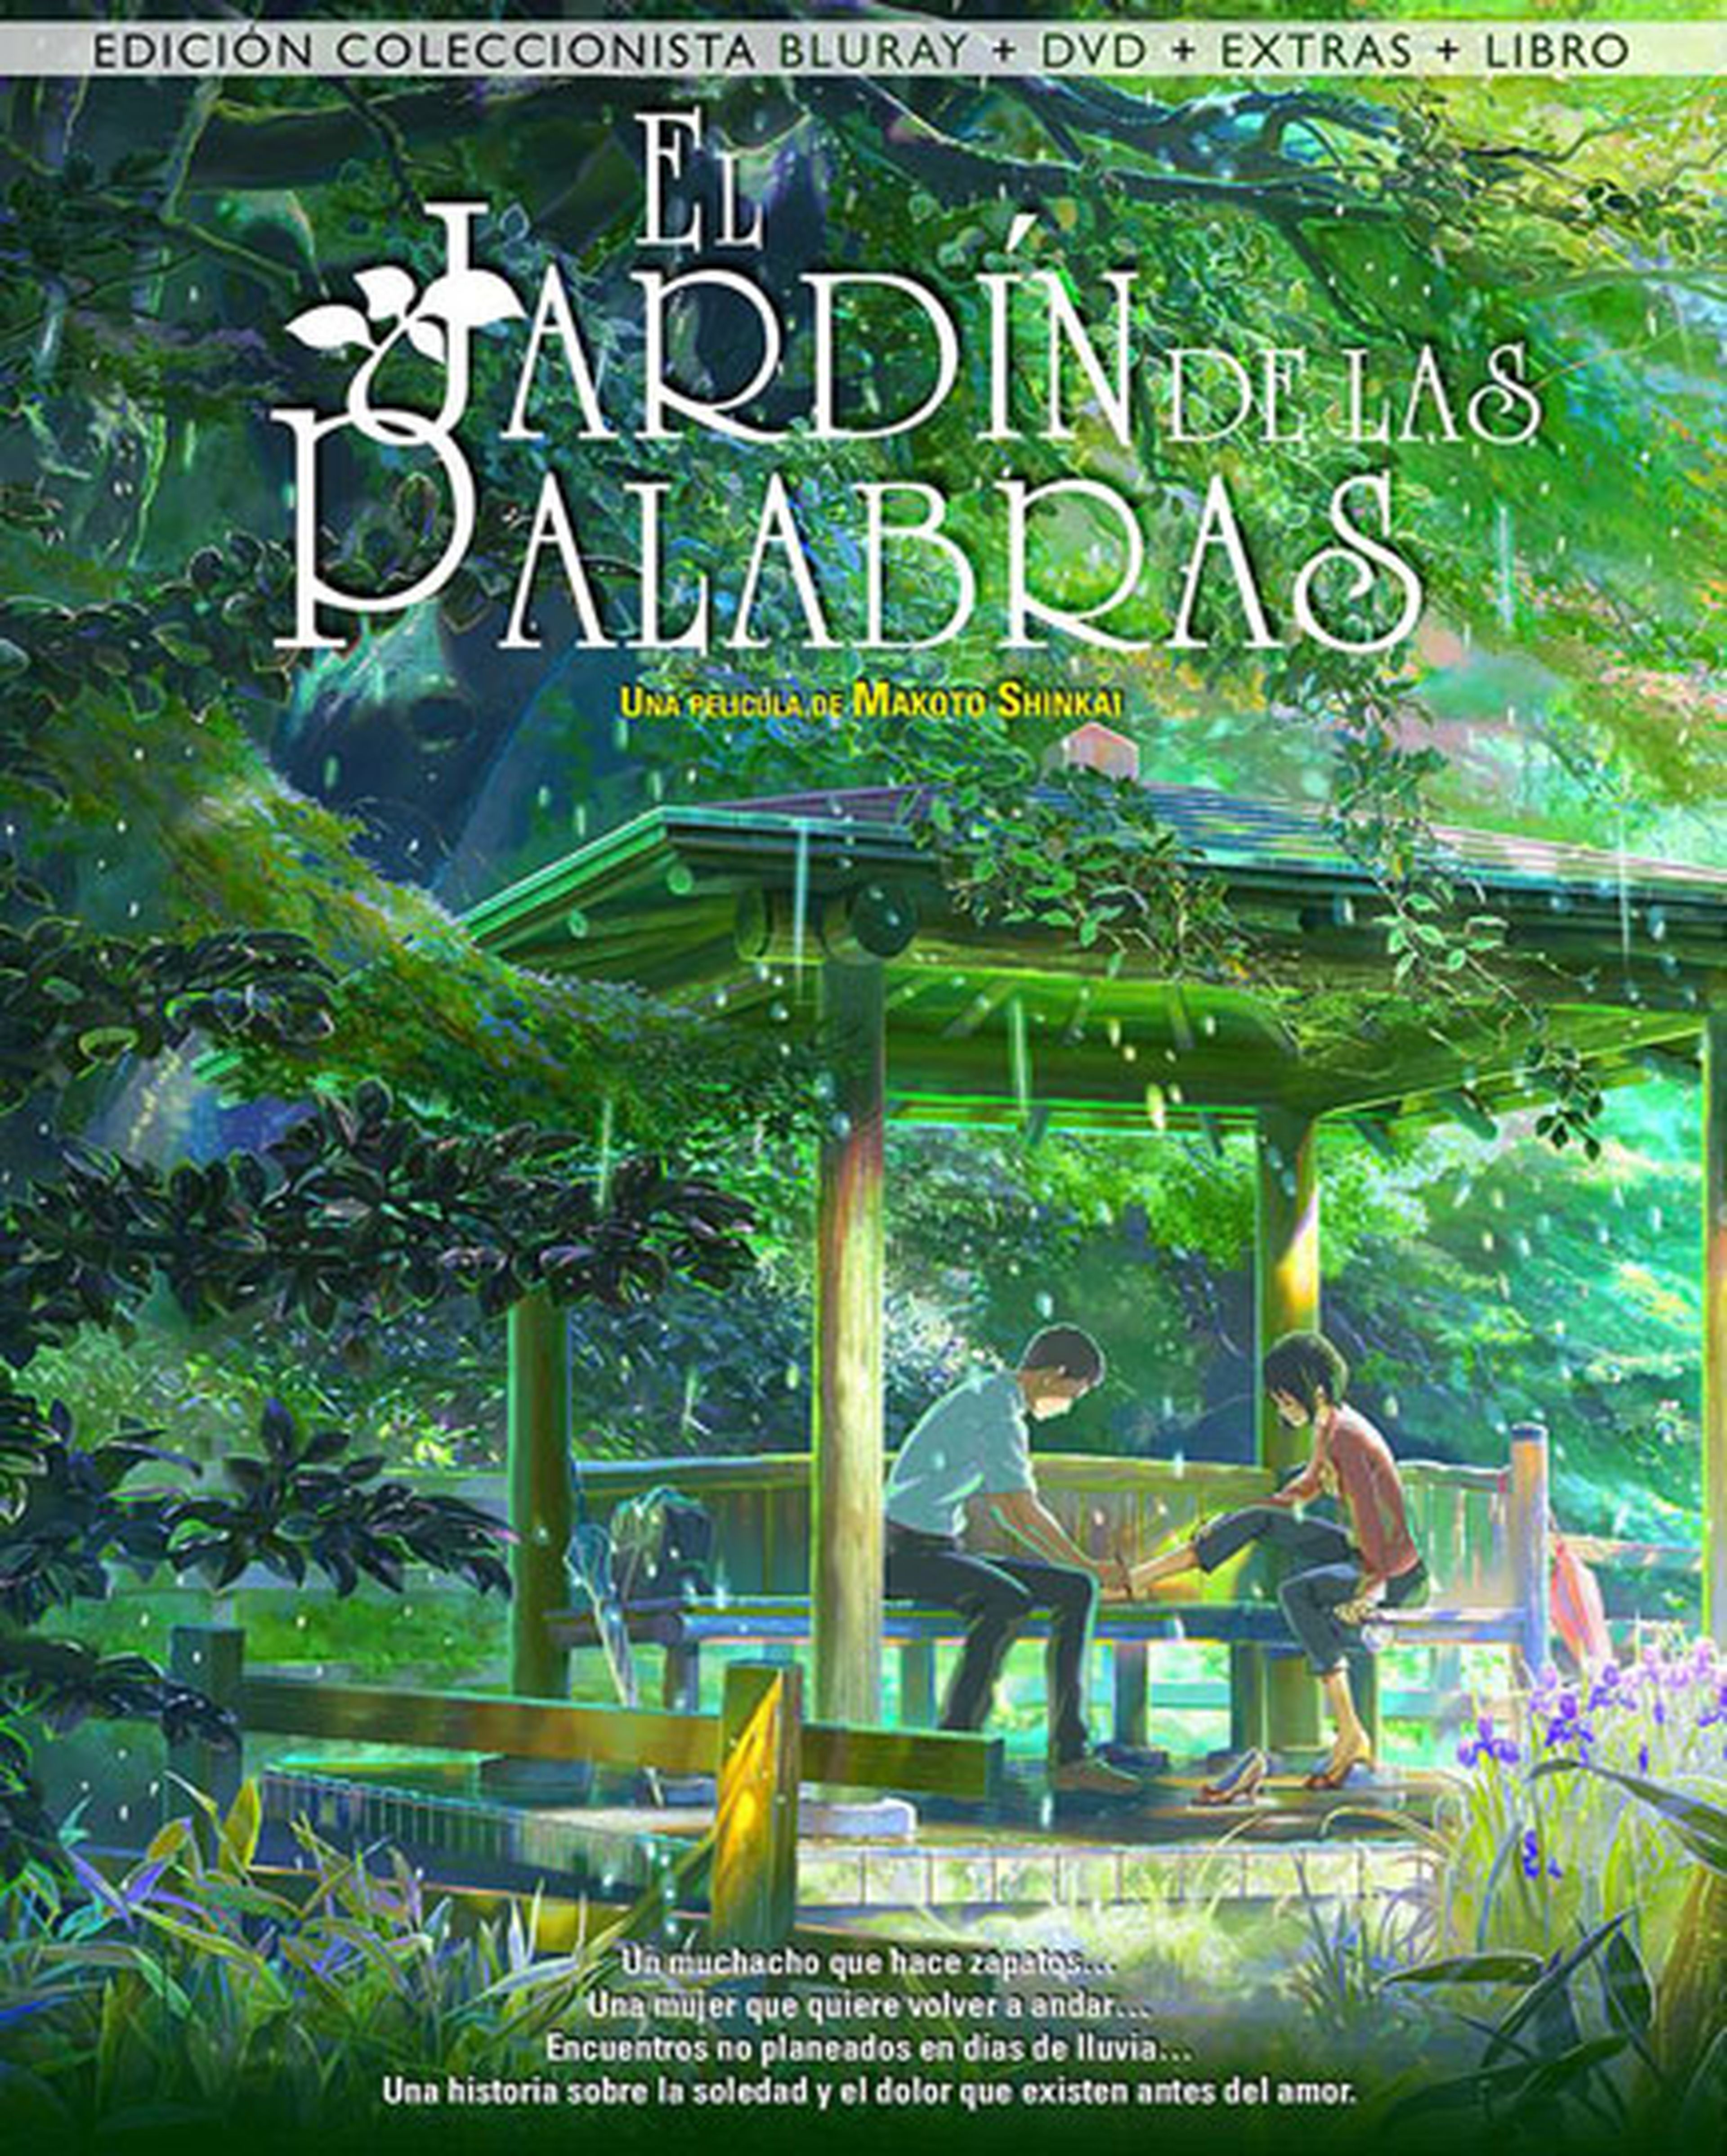 Edición en castellano de El Jardín de las Palabras